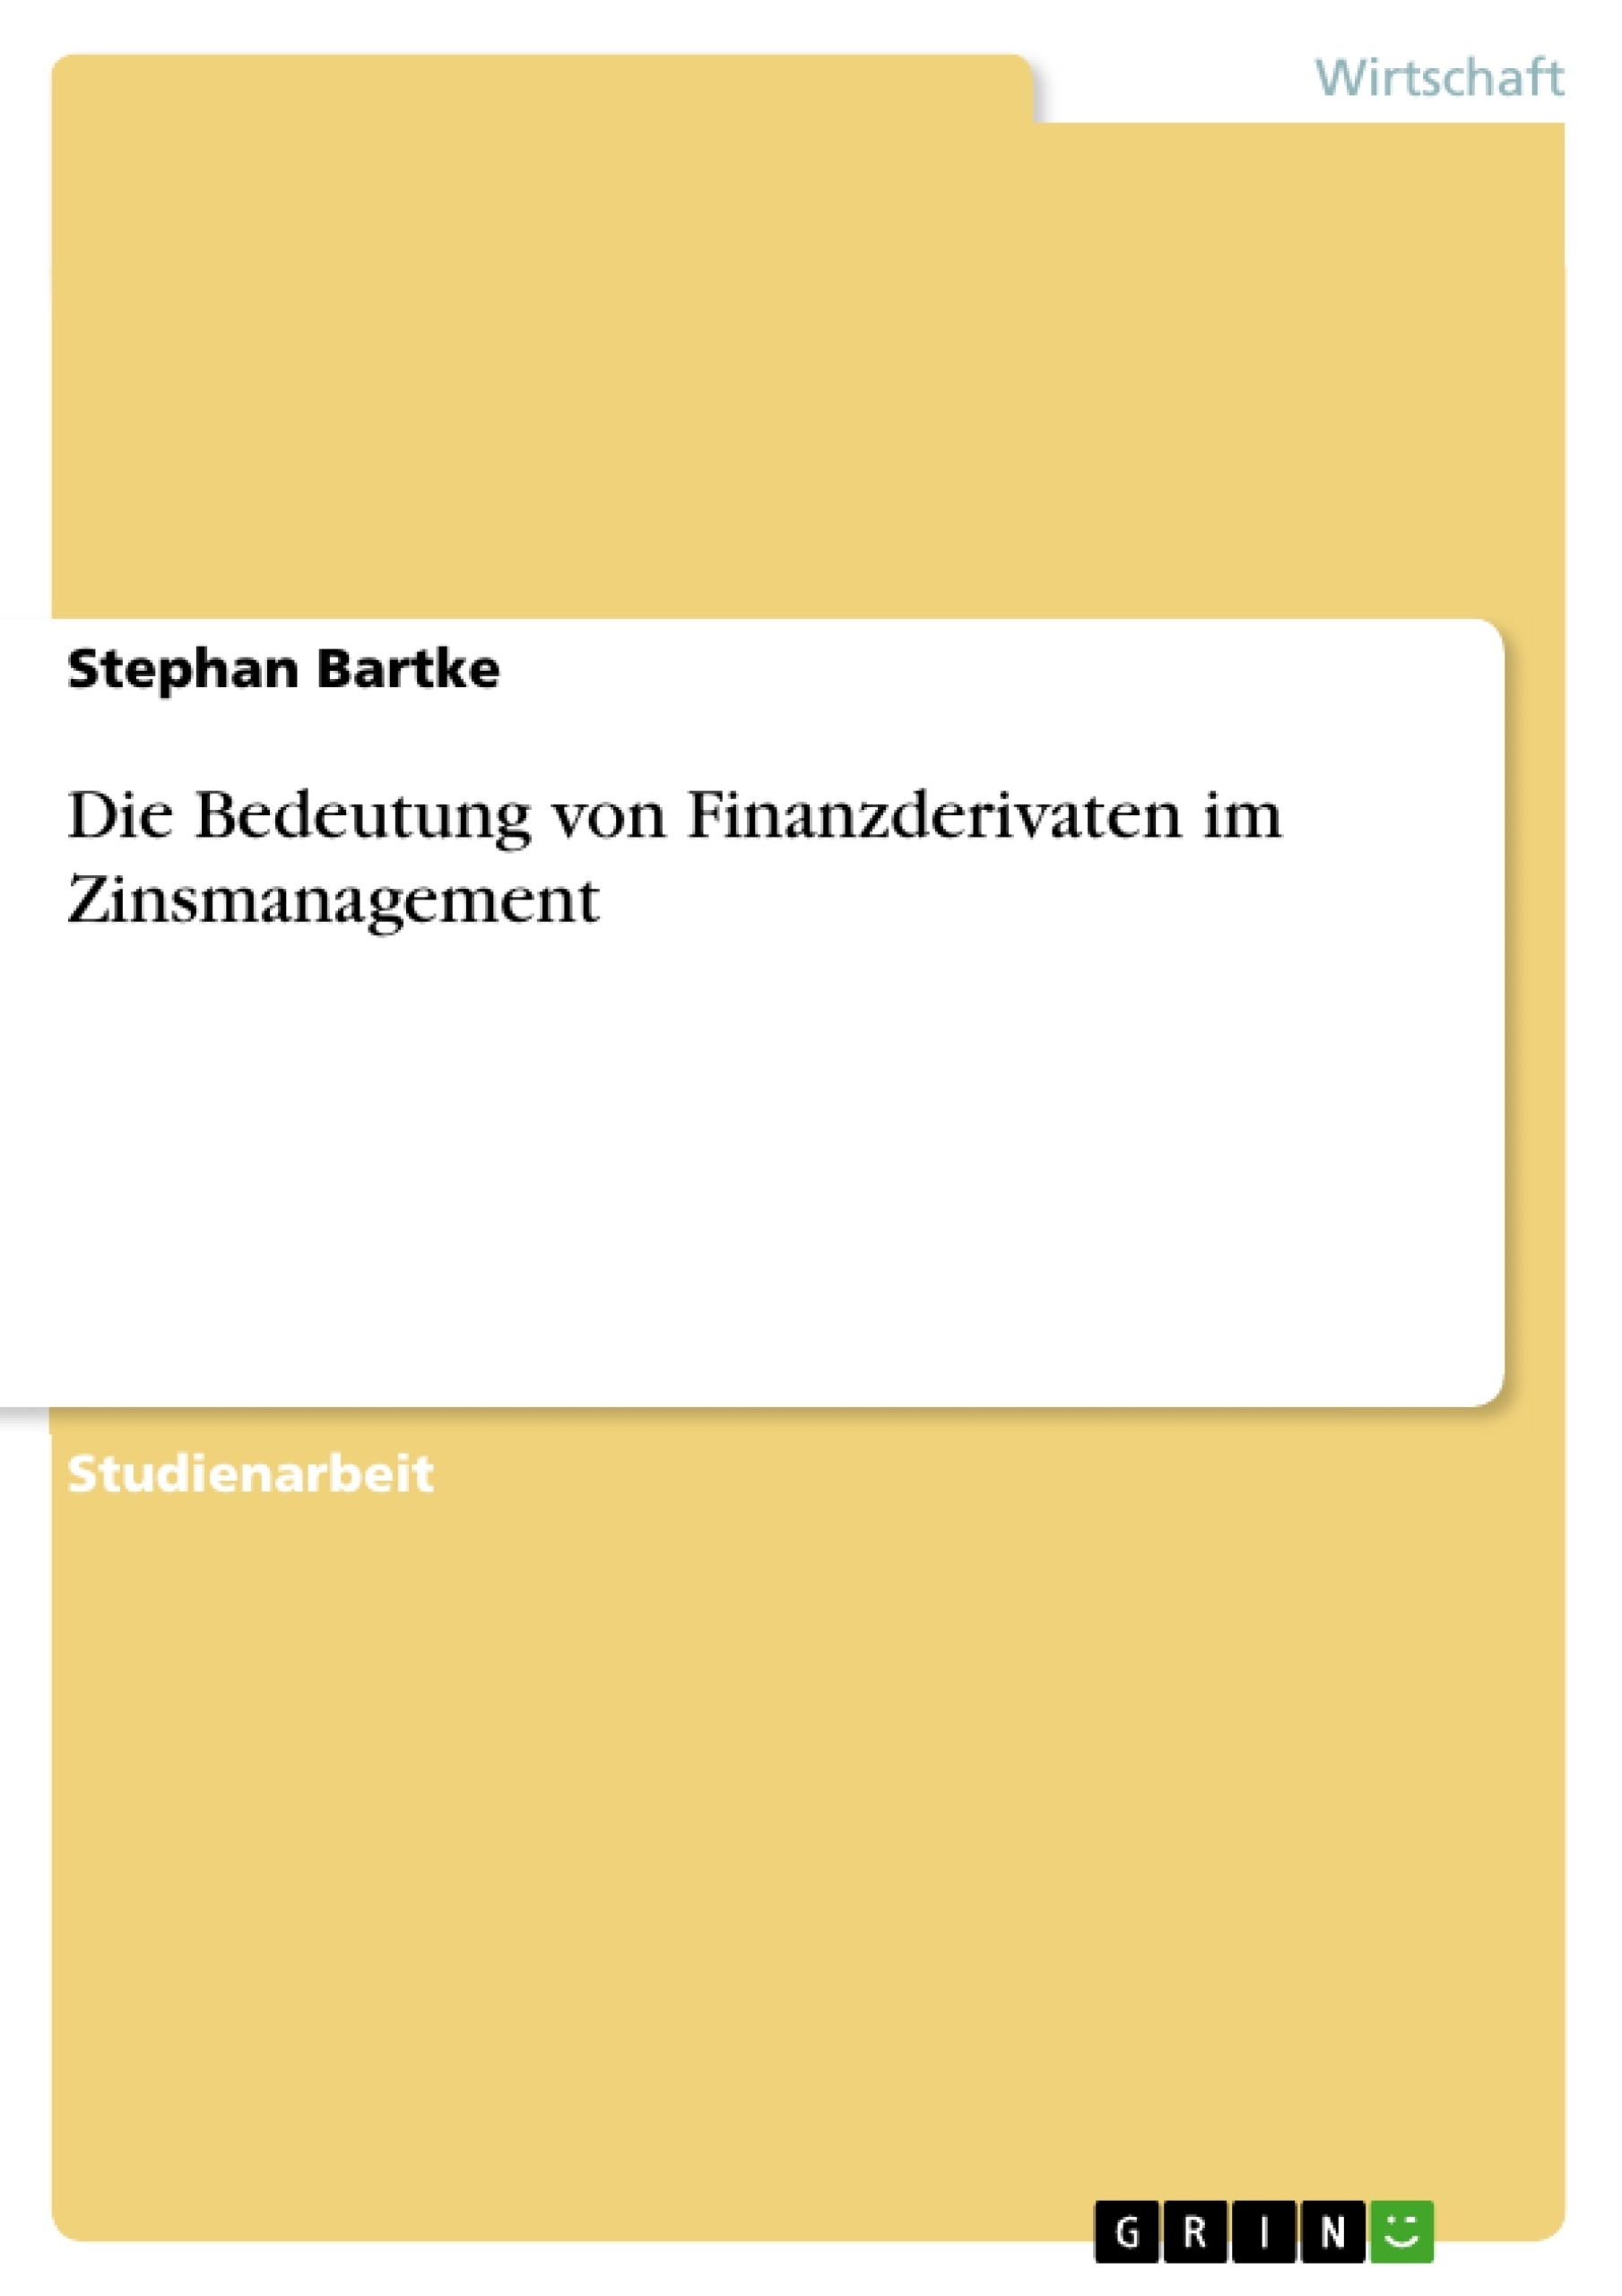 Título: Die Bedeutung von Finanzderivaten im Zinsmanagement